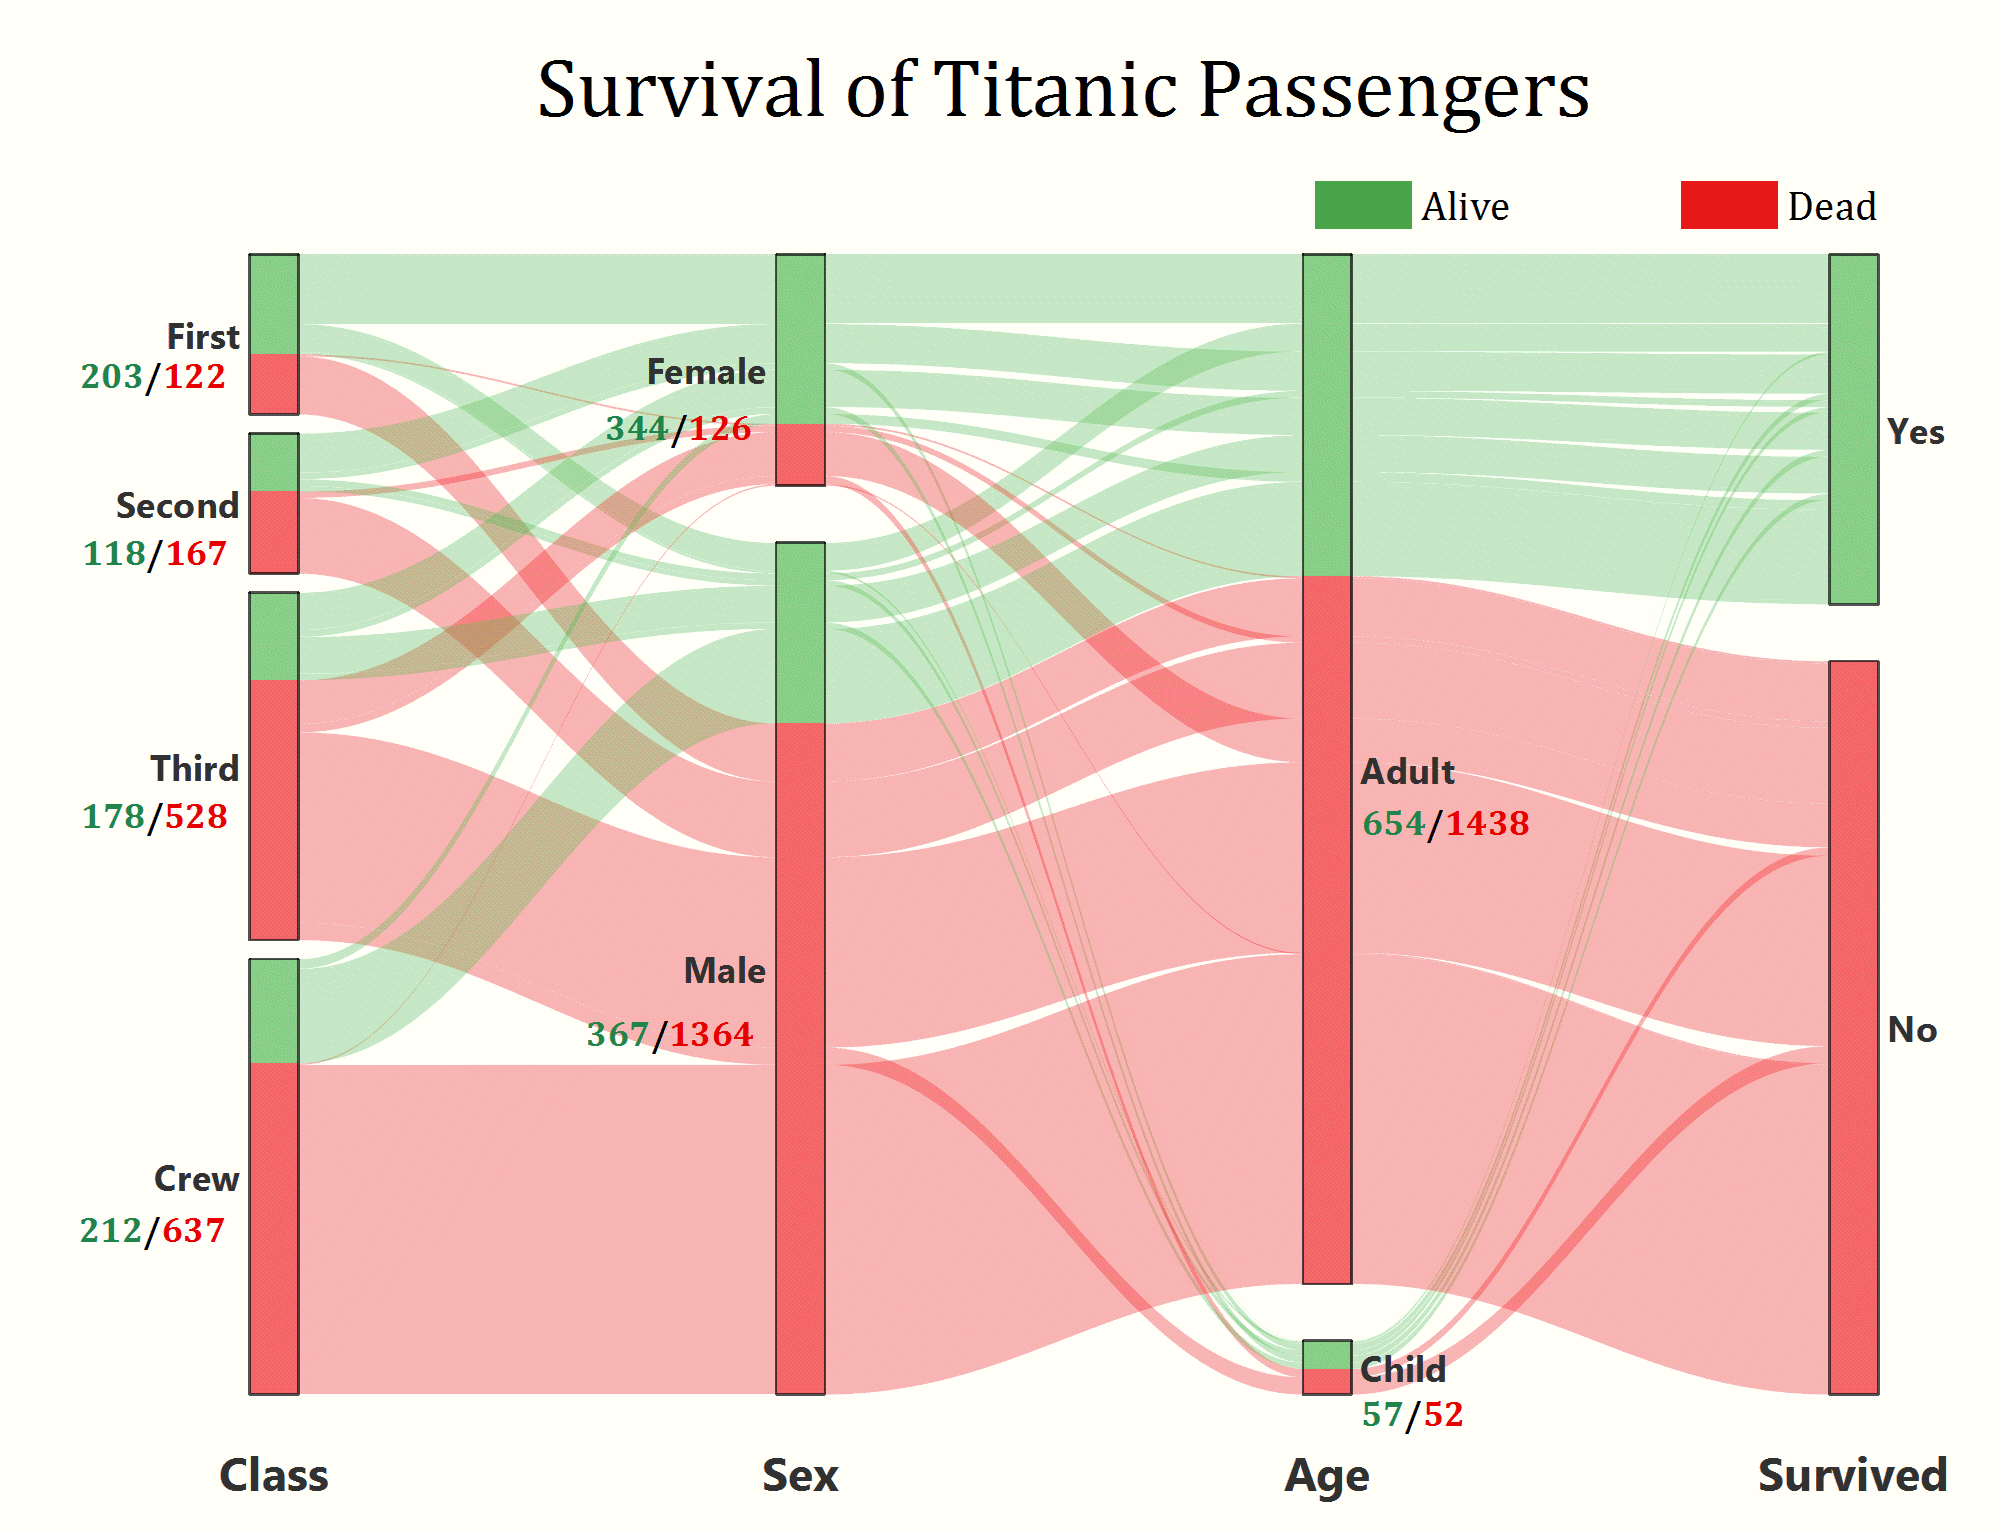 OriginPro and Origin 2020: Alluvial diagram of Titanic survival data